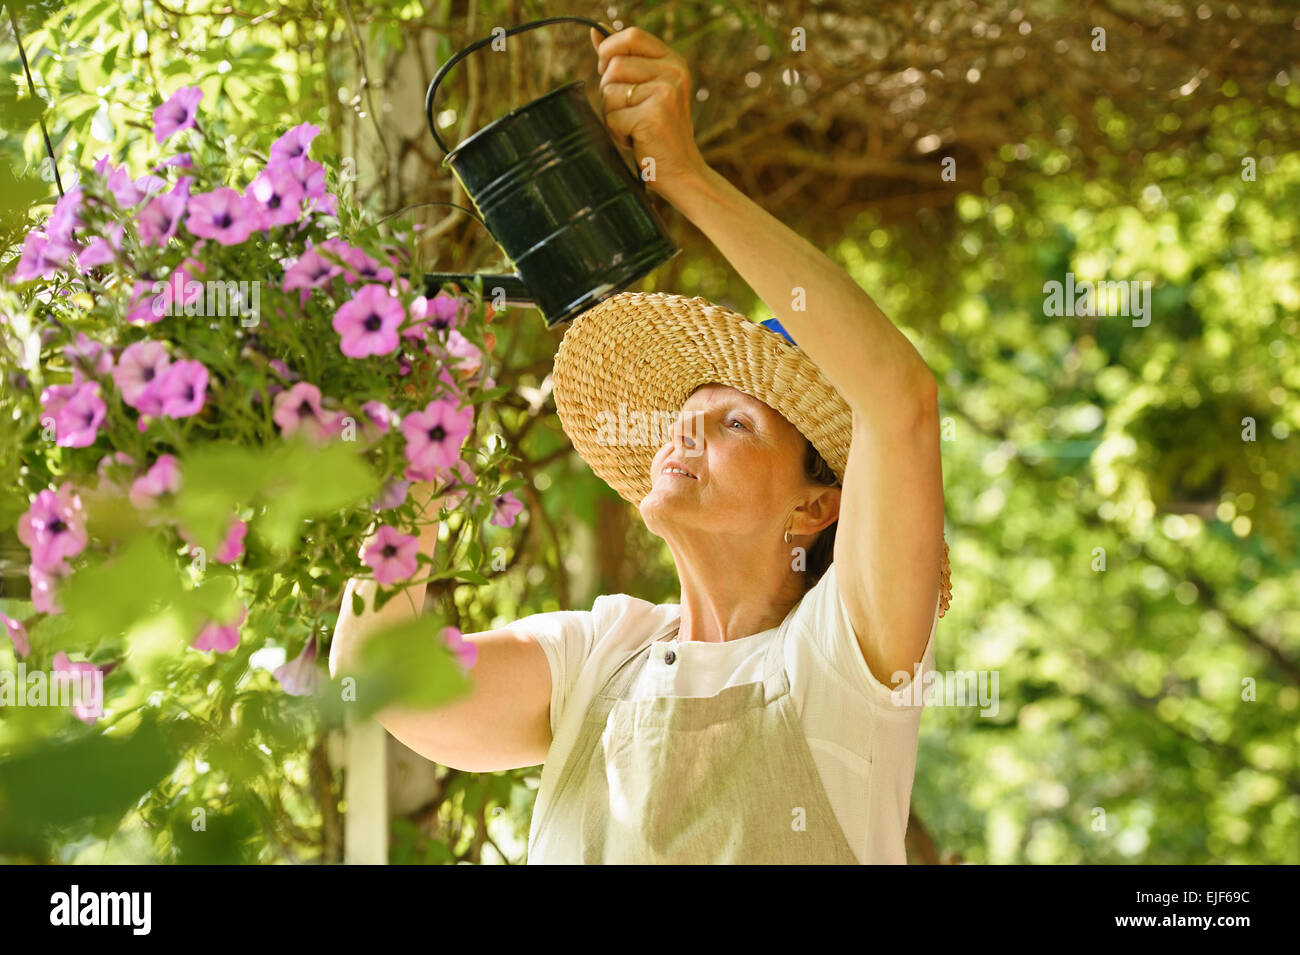 Ältere Frau Gewässern die Blumen in einem hängenden Topf. Sie steht unter einer Pergola Reben bedeckt. Stockfoto